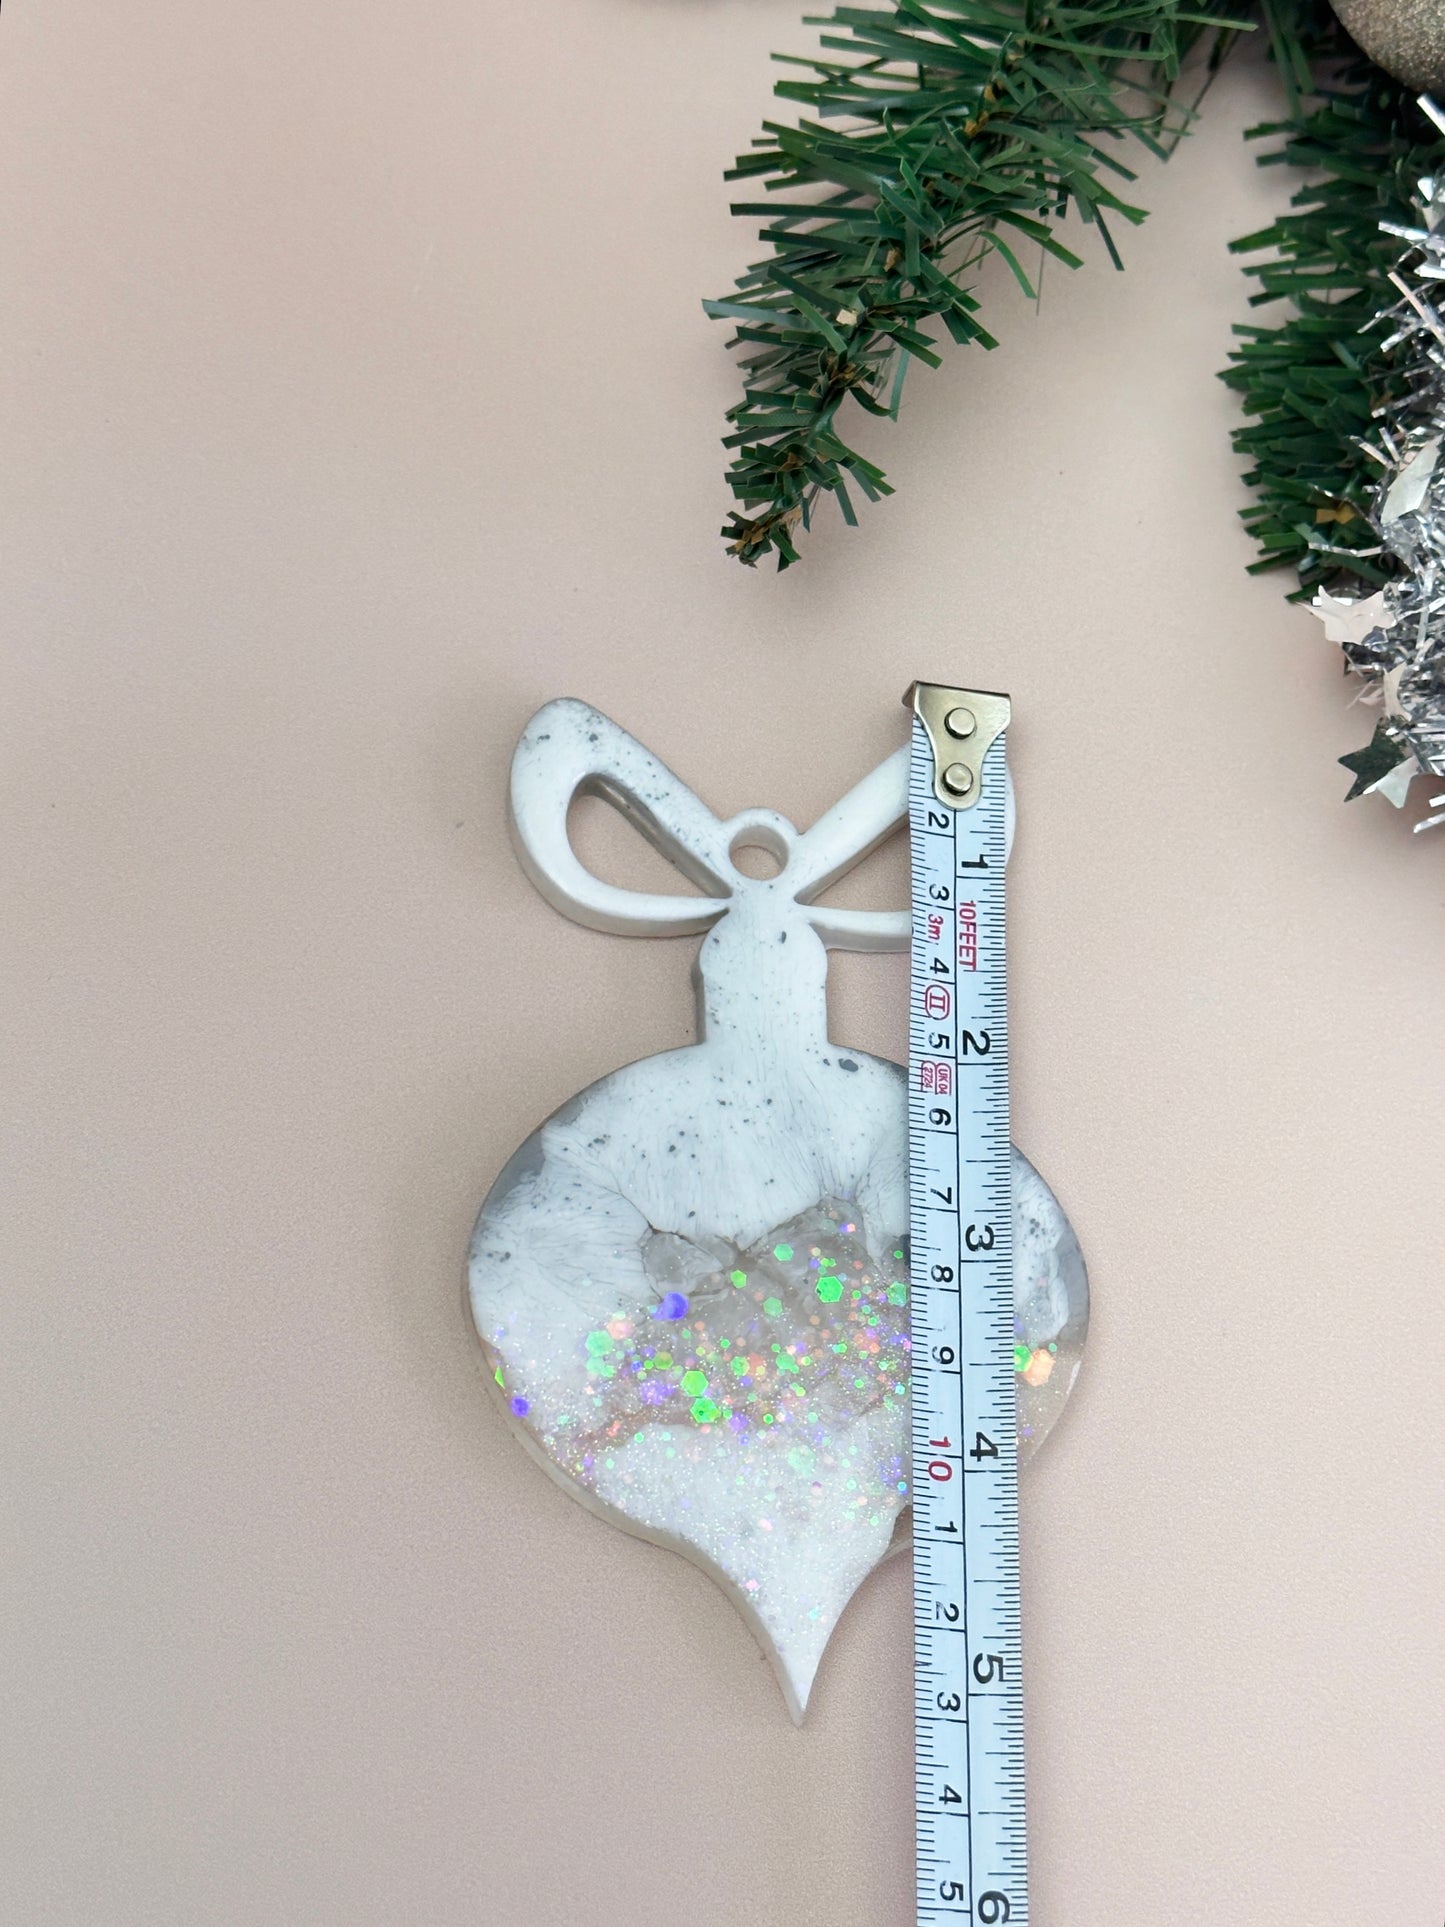 Silikonform für Weihnachtsbaumspielzeug: Kreieren Sie mit dieser großen Harzform festliche DIY-Kunsthandwerke und weihnachtliche Heimdekorationen